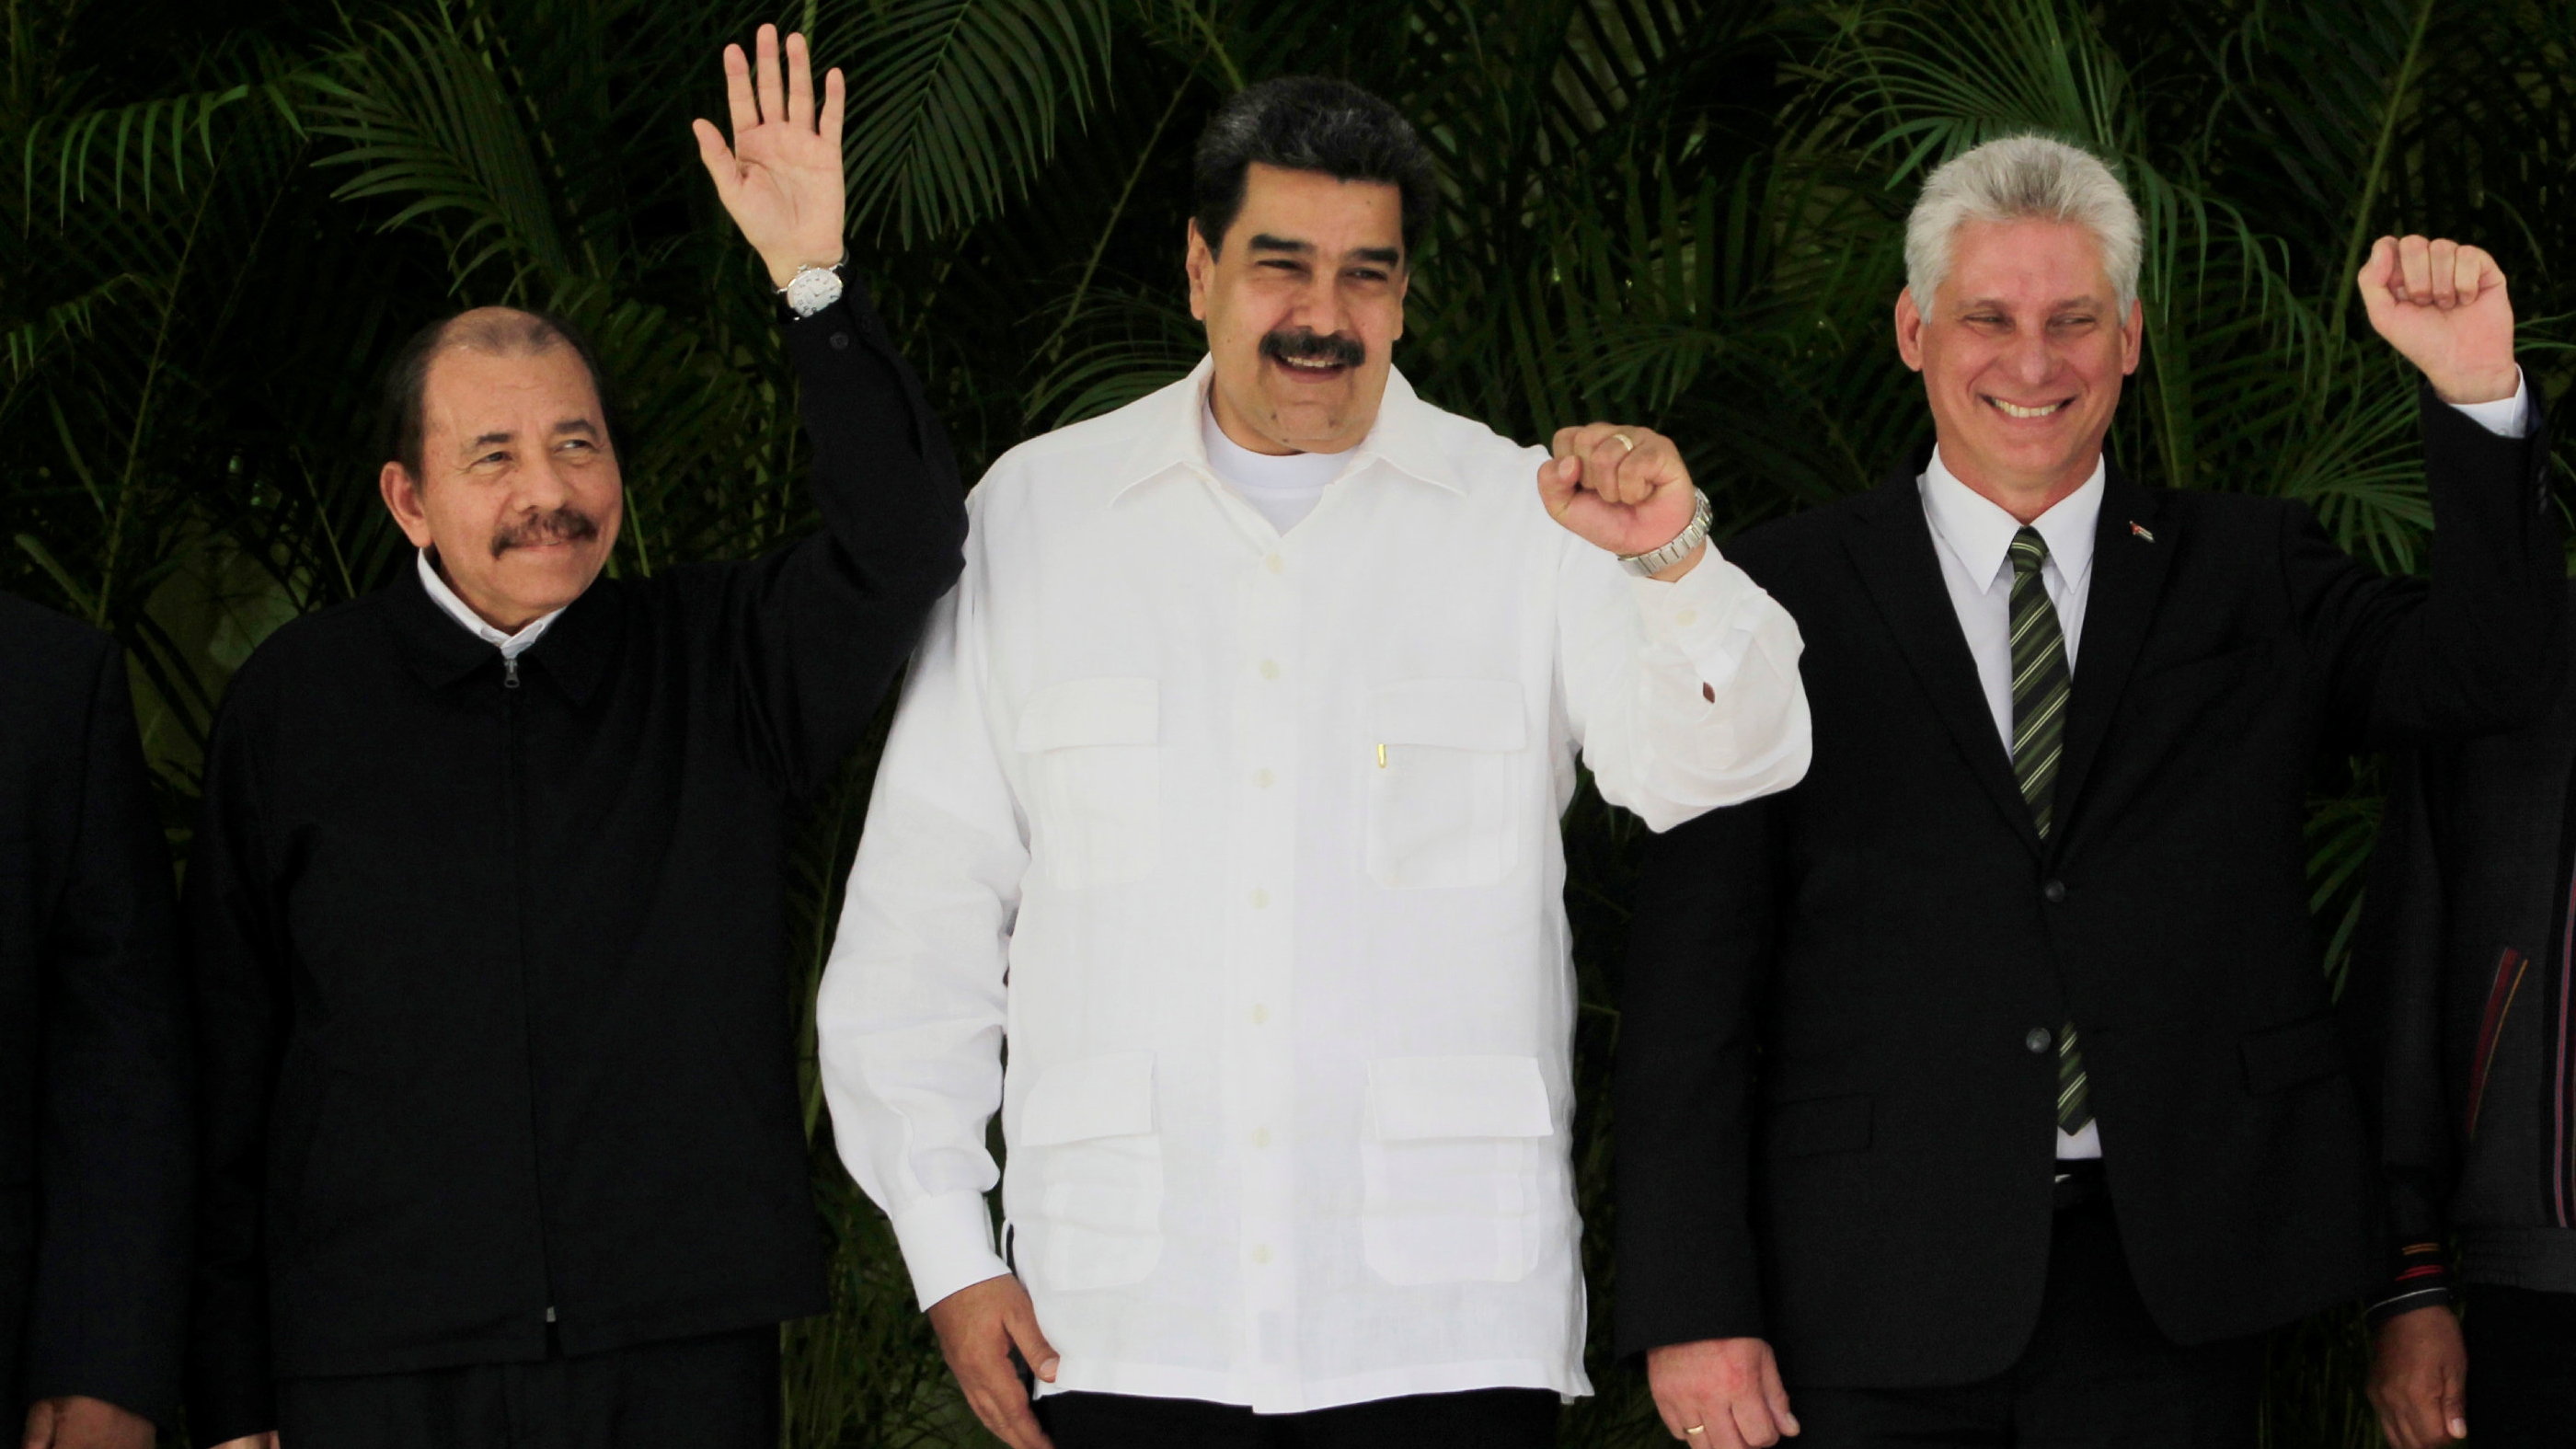 La SIP lamentó la participación de los regímenes de Cuba, Nicaragua y Venezuela en la cumbre de la CELAC.  REUTERS/Stringer